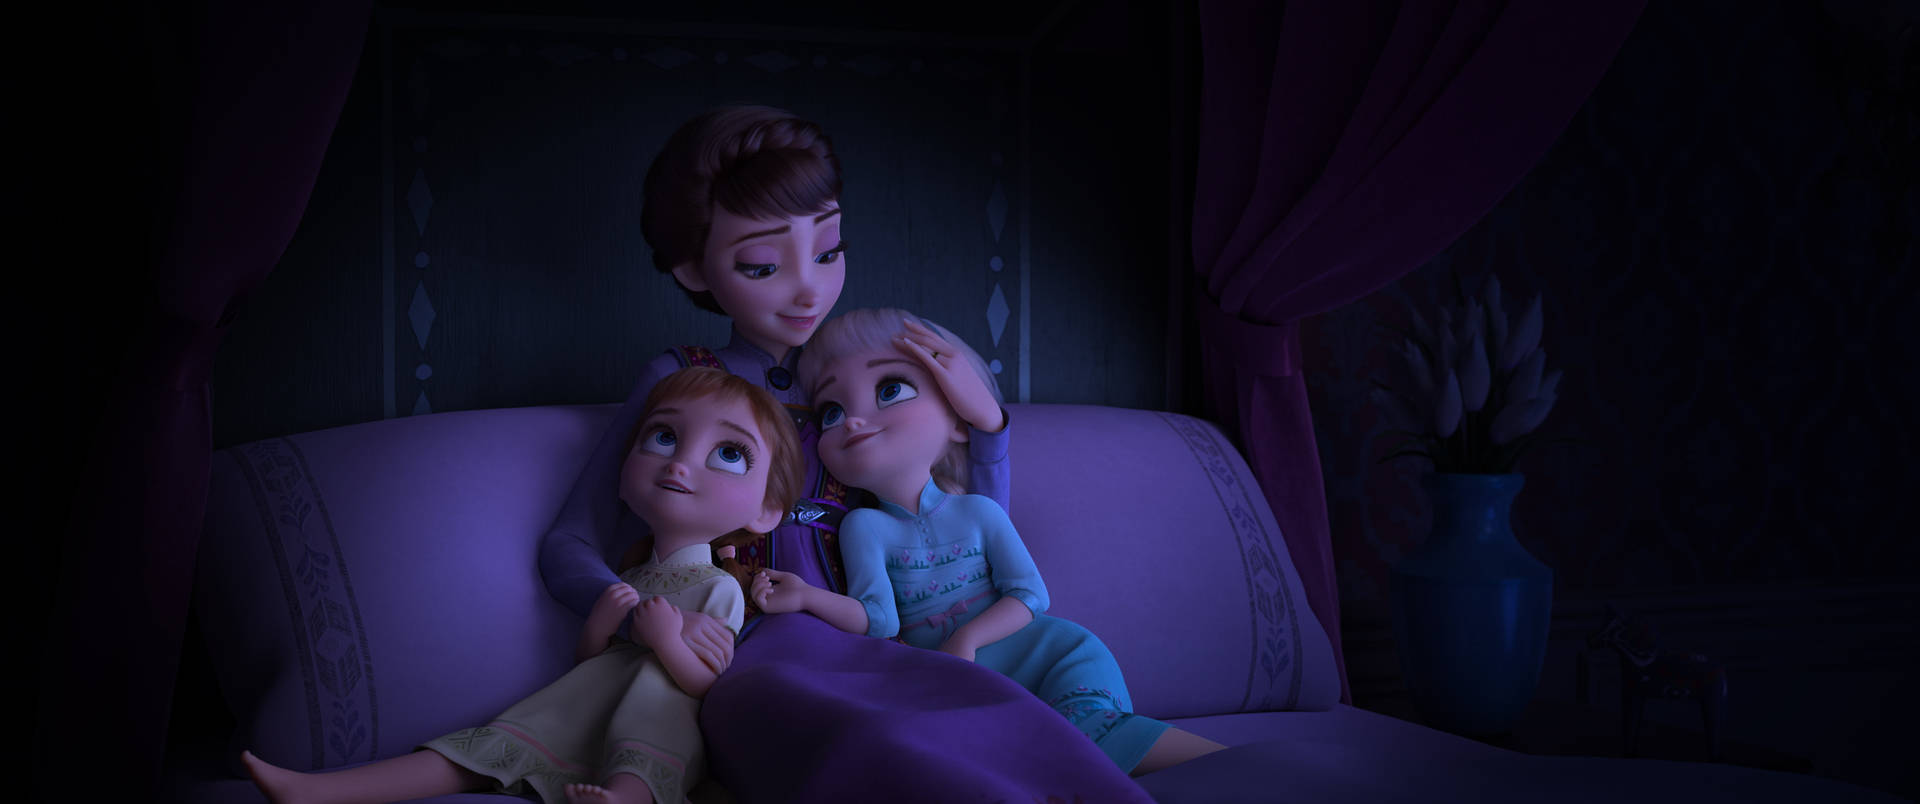 A Heartwarming Moment Between Elsa, Anna, And Their Mother Iduna